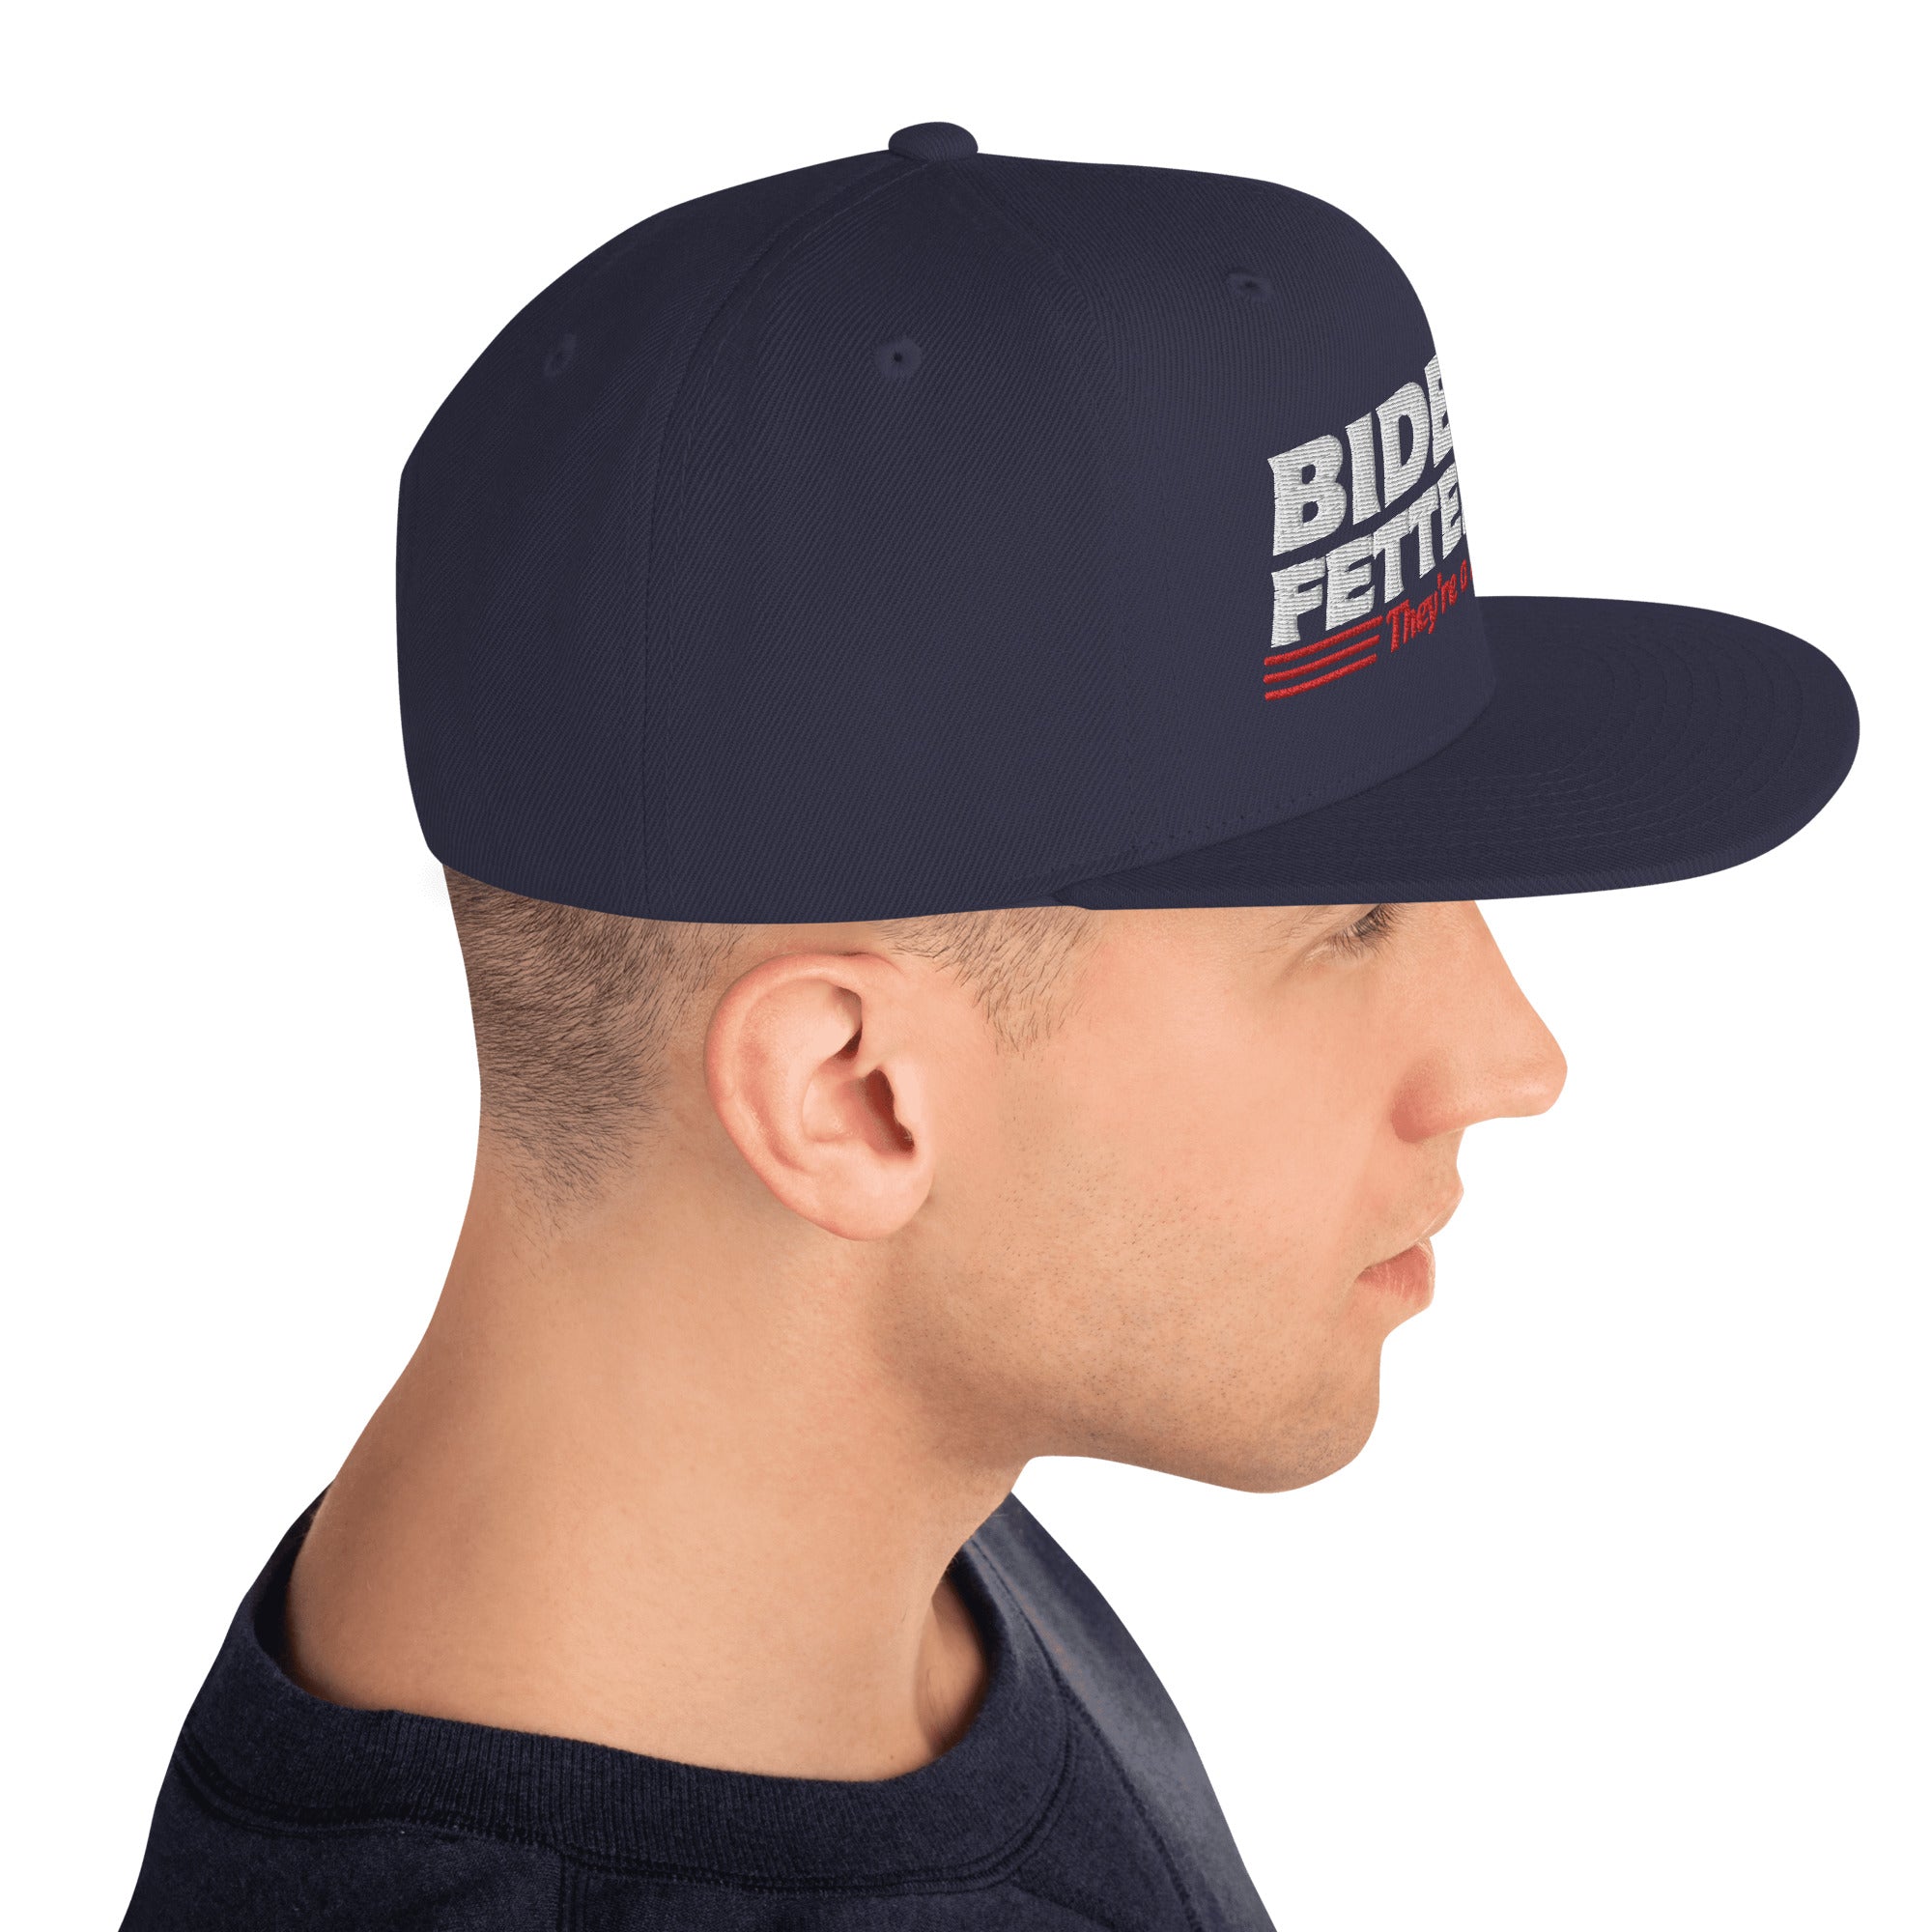 Biden Fetterman Snapback Hat